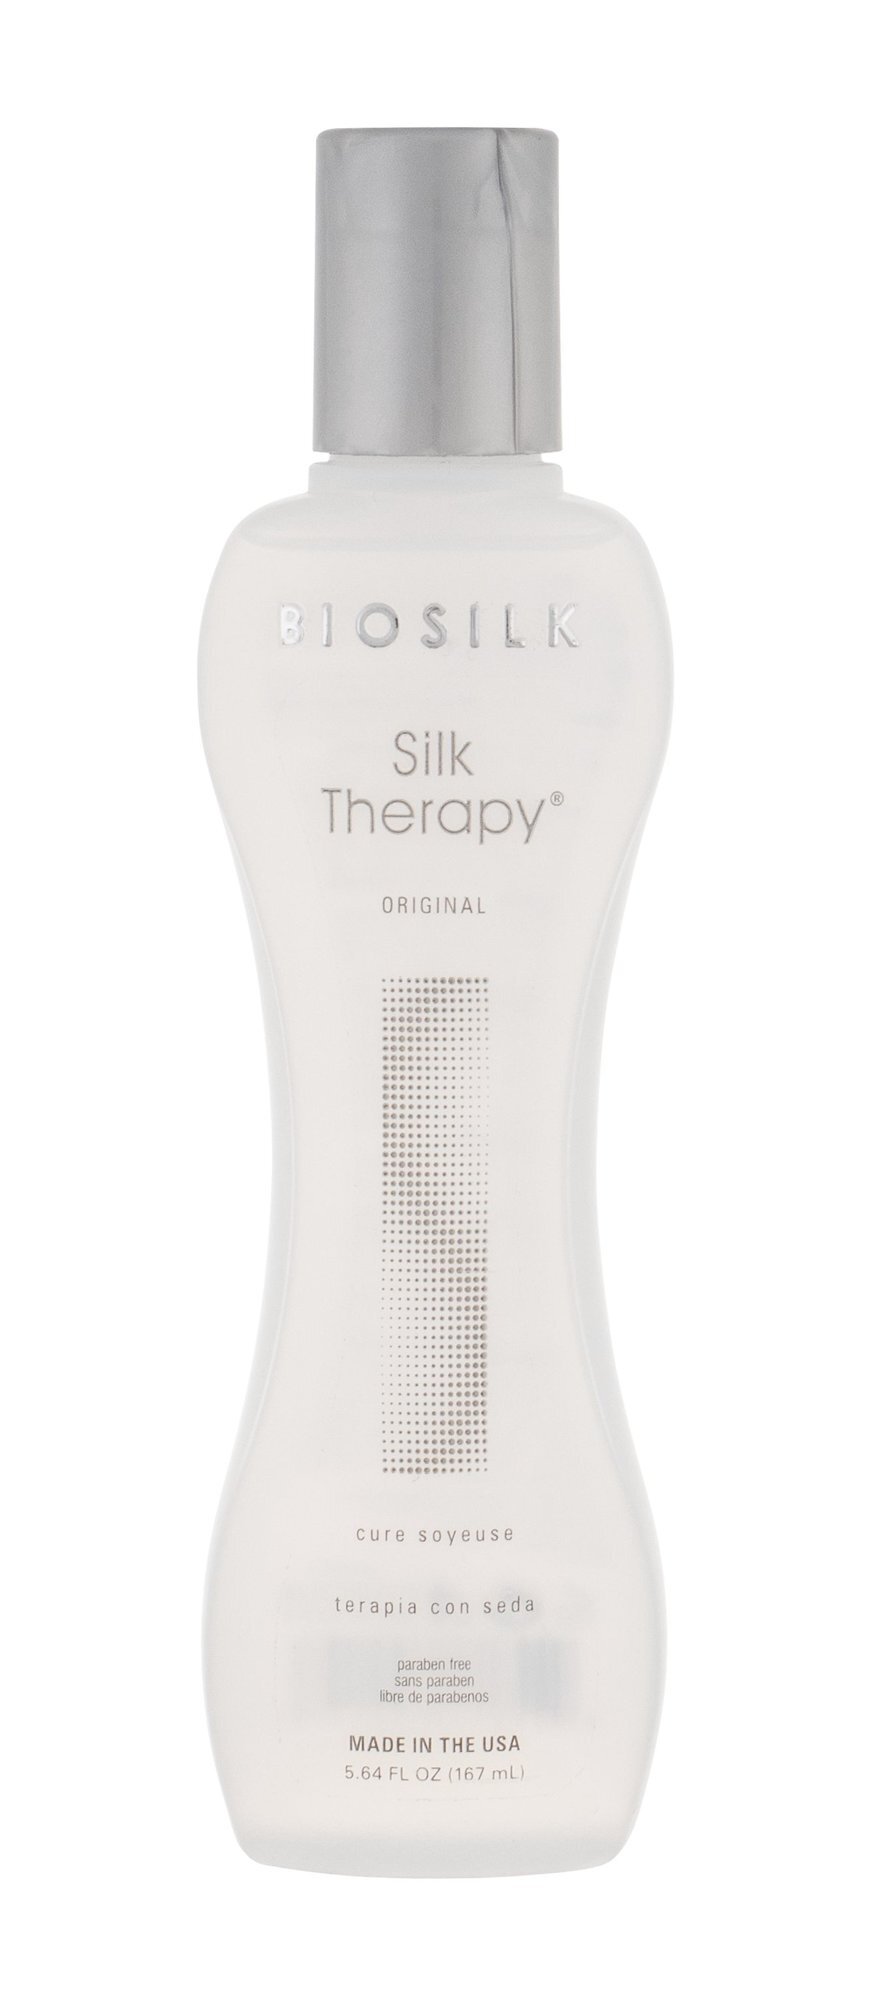 Plaukų šilkas Biosilk Silk Therapy, 167 ml